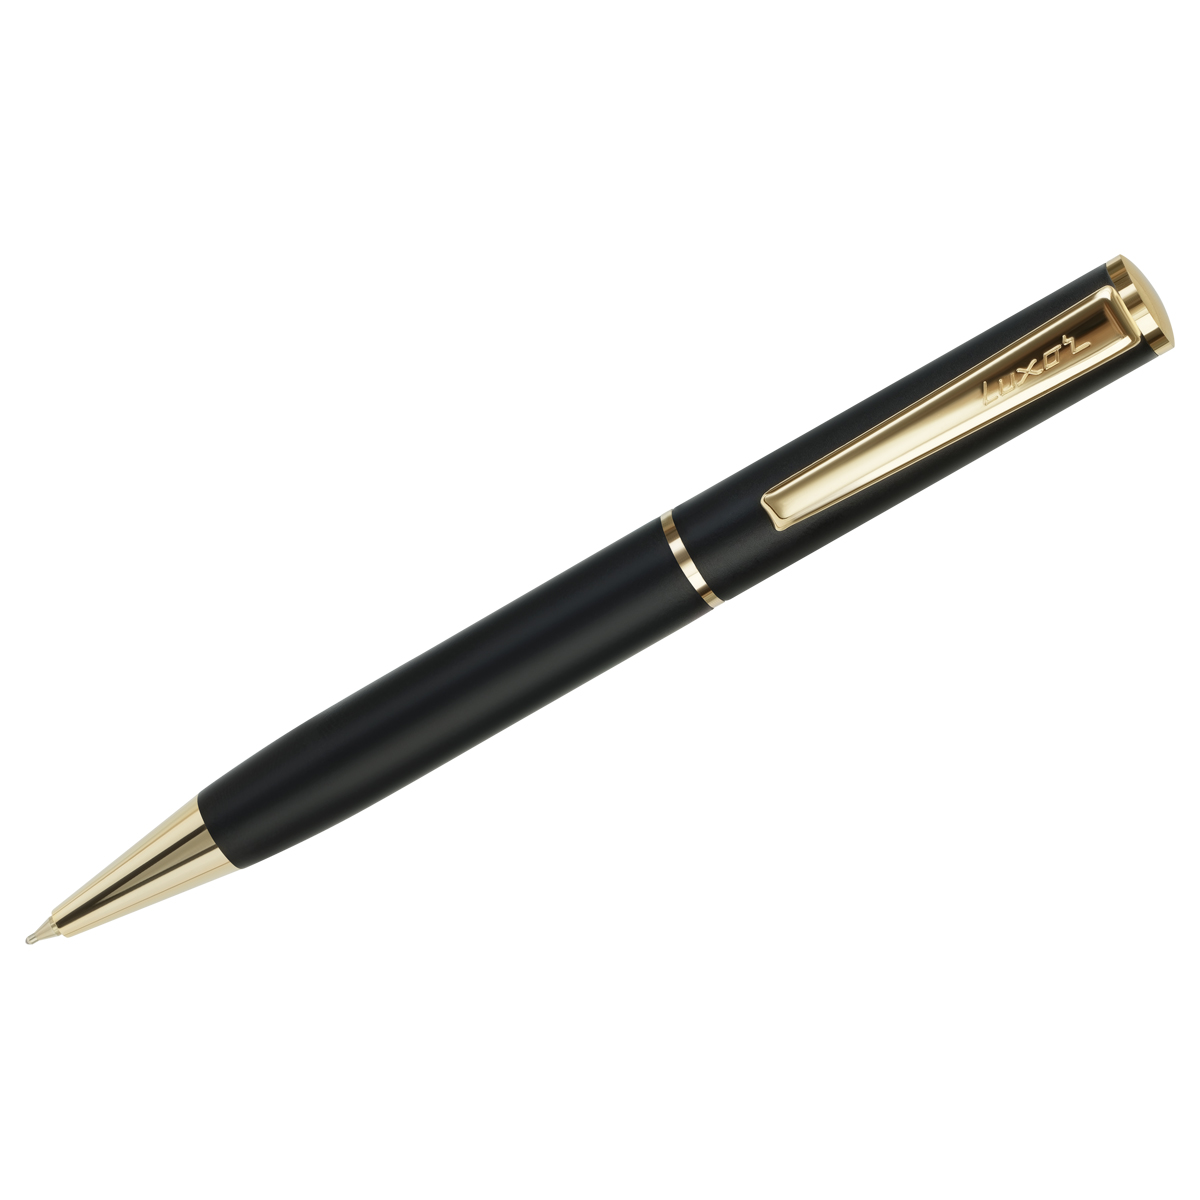 Ручка шариковая Luxor "Rado" синяя, 0,7мм, корпус черный/золото, поворотный механизм, футляр